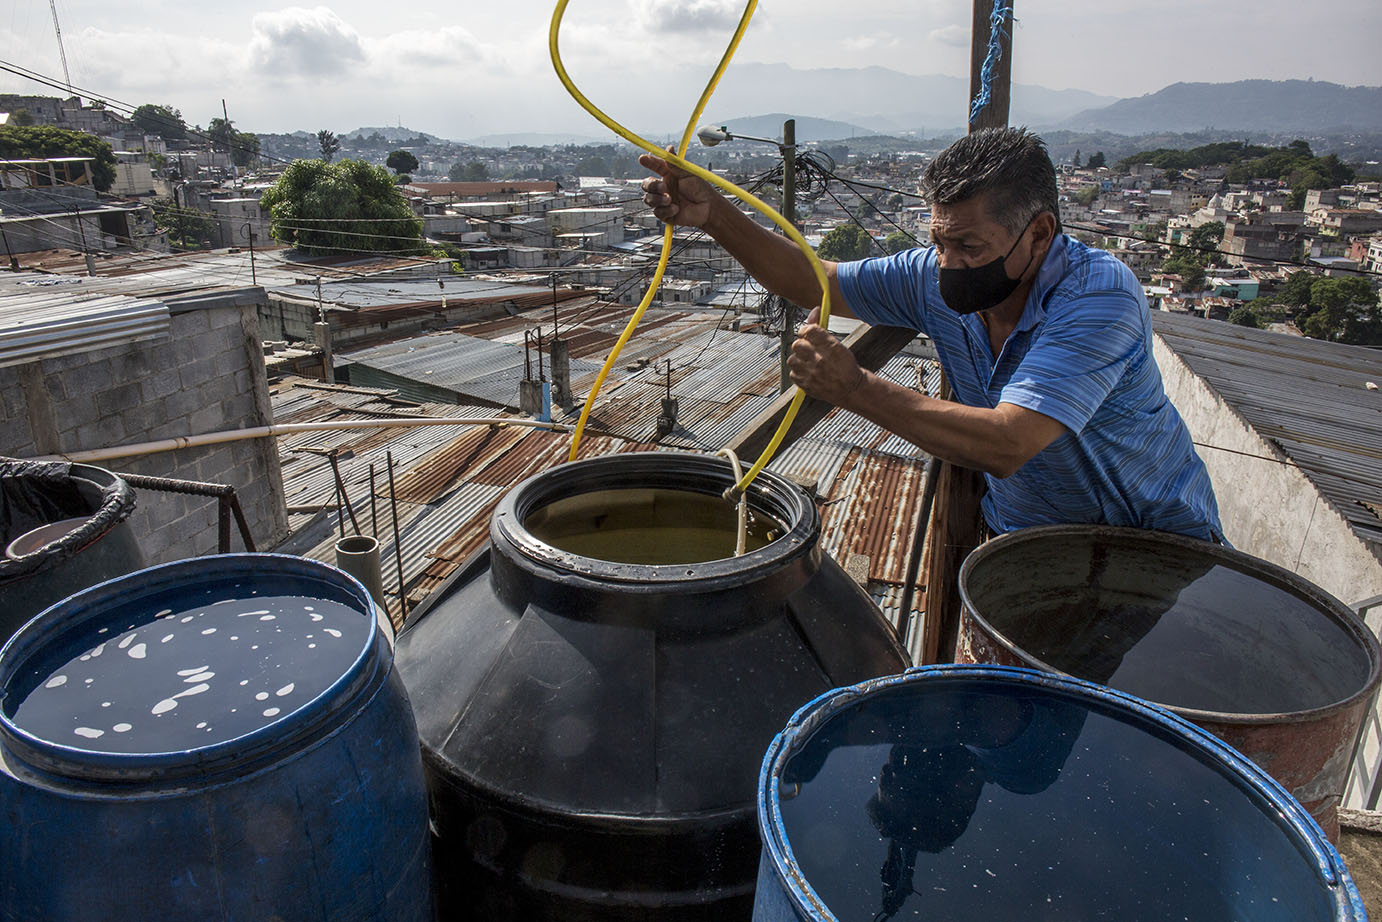 Isidro Ortiz Ascuc, 58, llena de agua los toneles en la terraza de su casa, en la colonia Candelaria, zona 18 capitalina, durante una distribución de agua, en mayo 2020. Simone Dalmasso